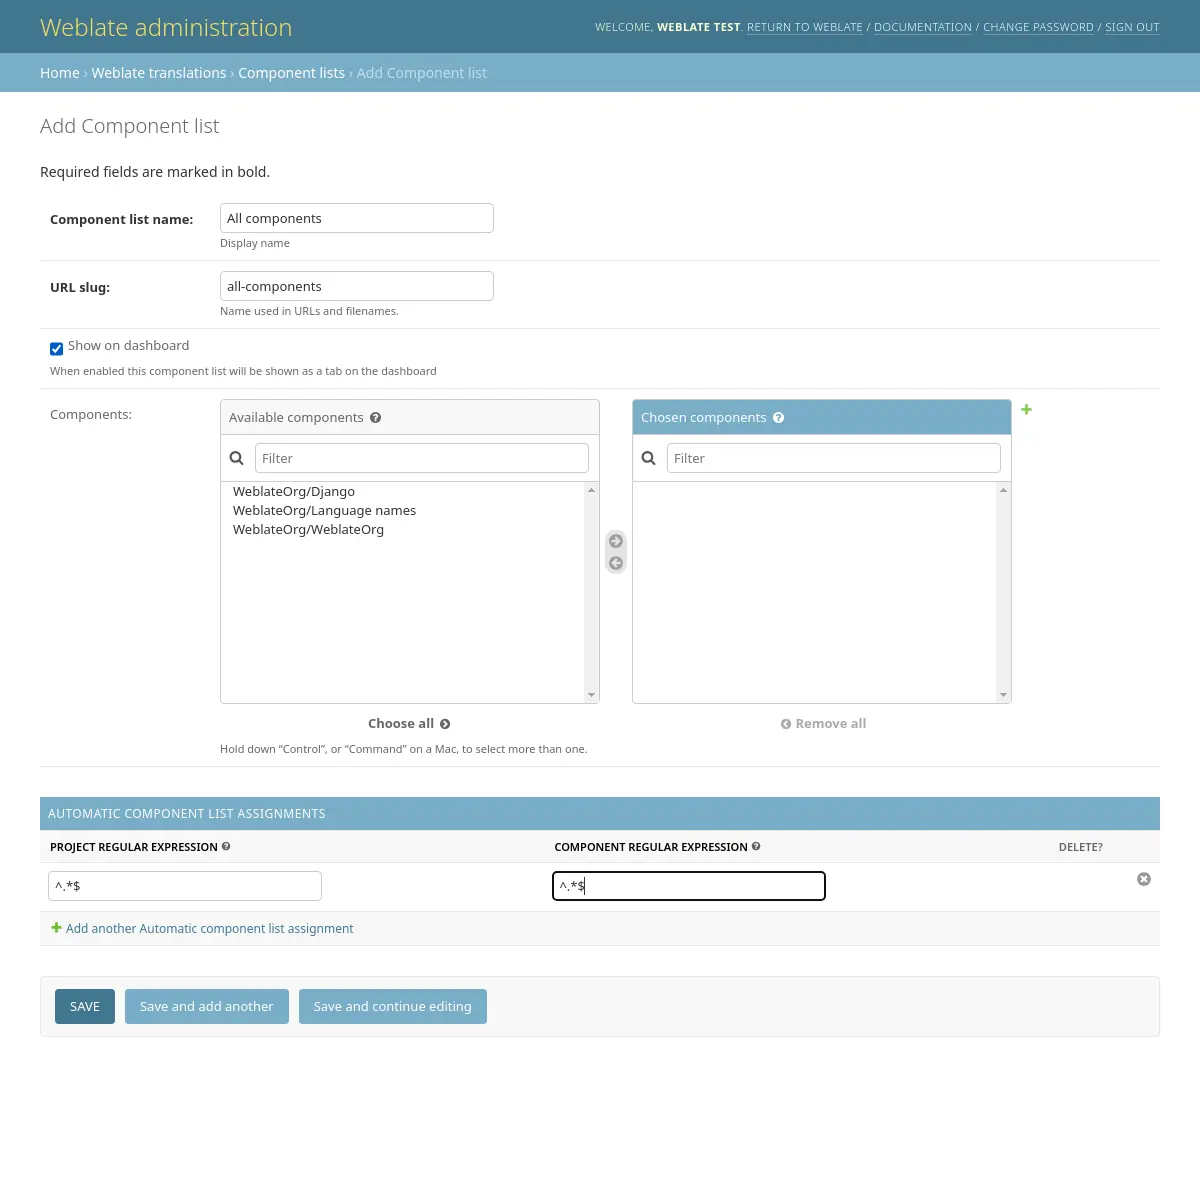 Imagen que muestra el panel de administración de Weblate con la configuración anterior rellenada.